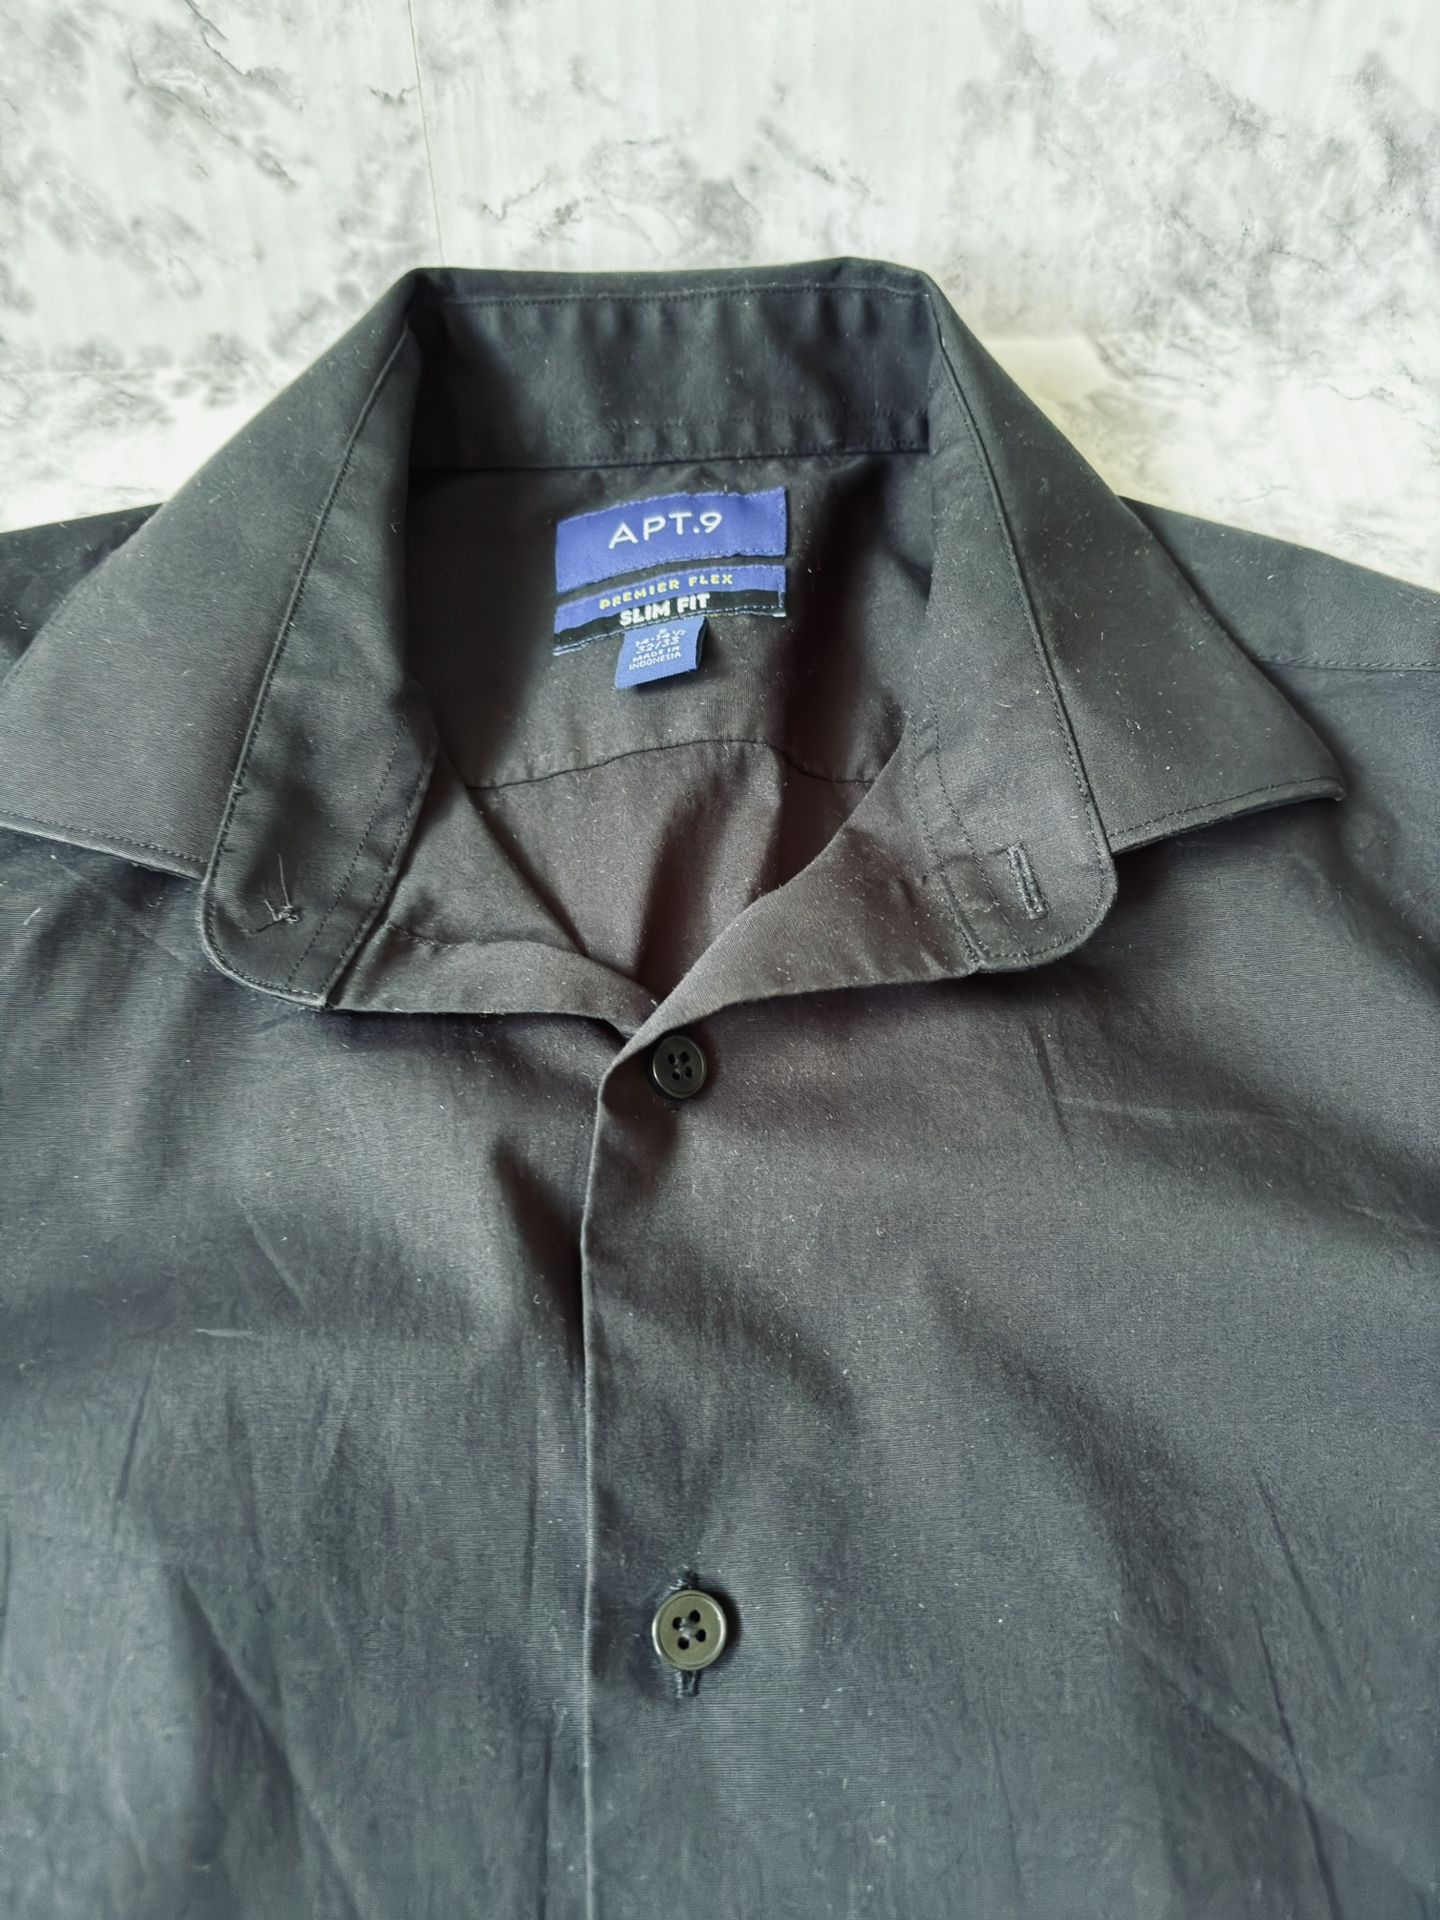 APT 9 dress shirt S 14-14 1/2 32-33 Button up Black